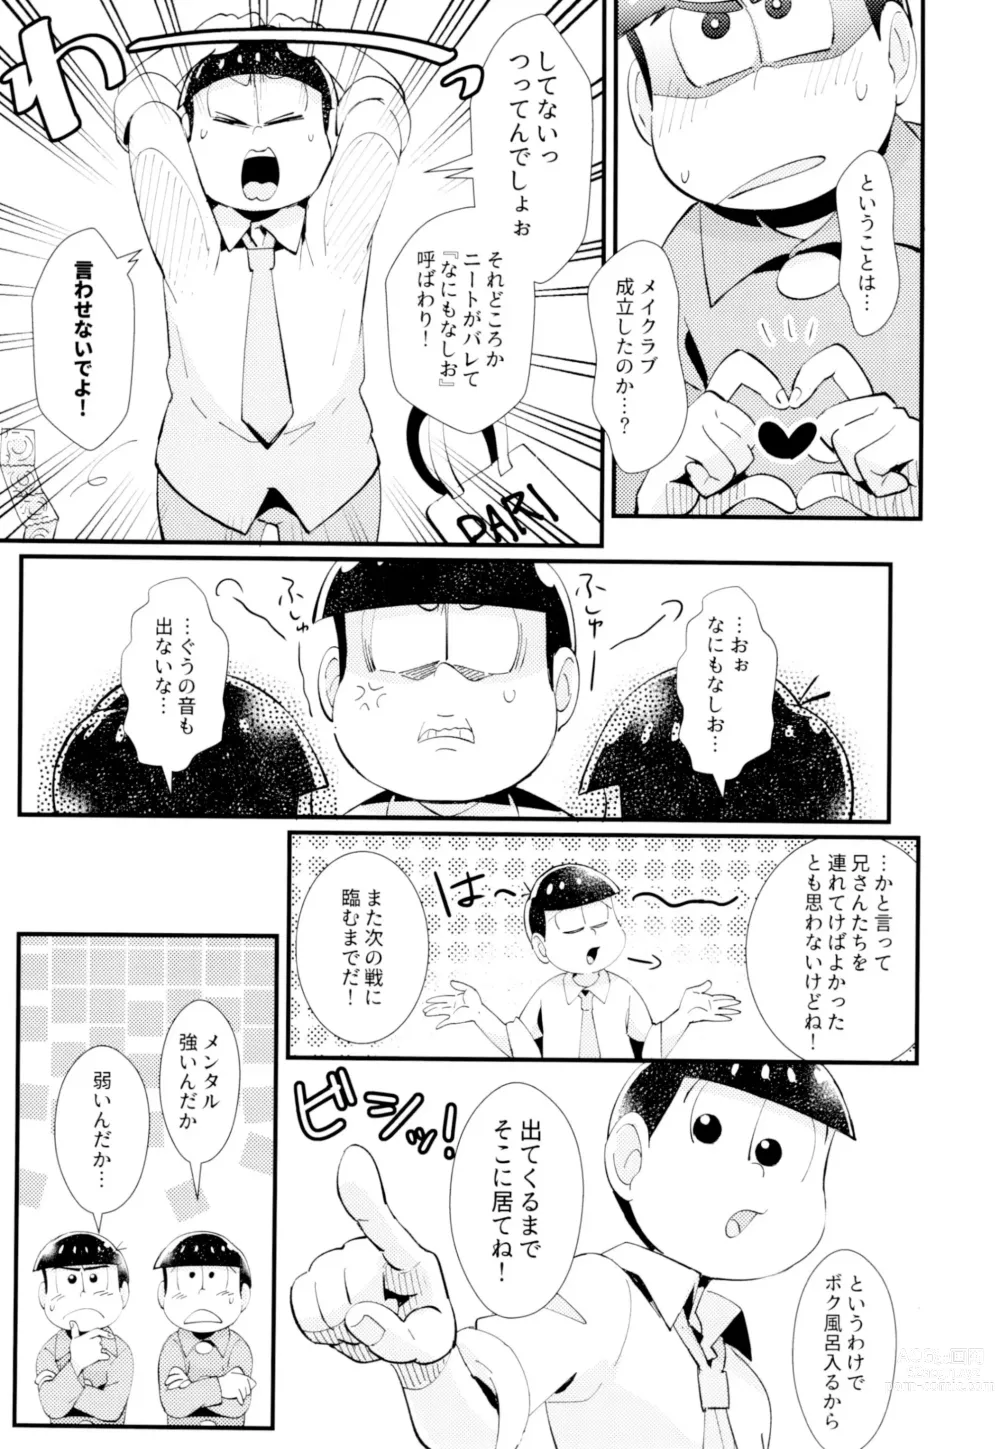 Page 7 of doujinshi Hajimari wa, Yomichi no Kaori.